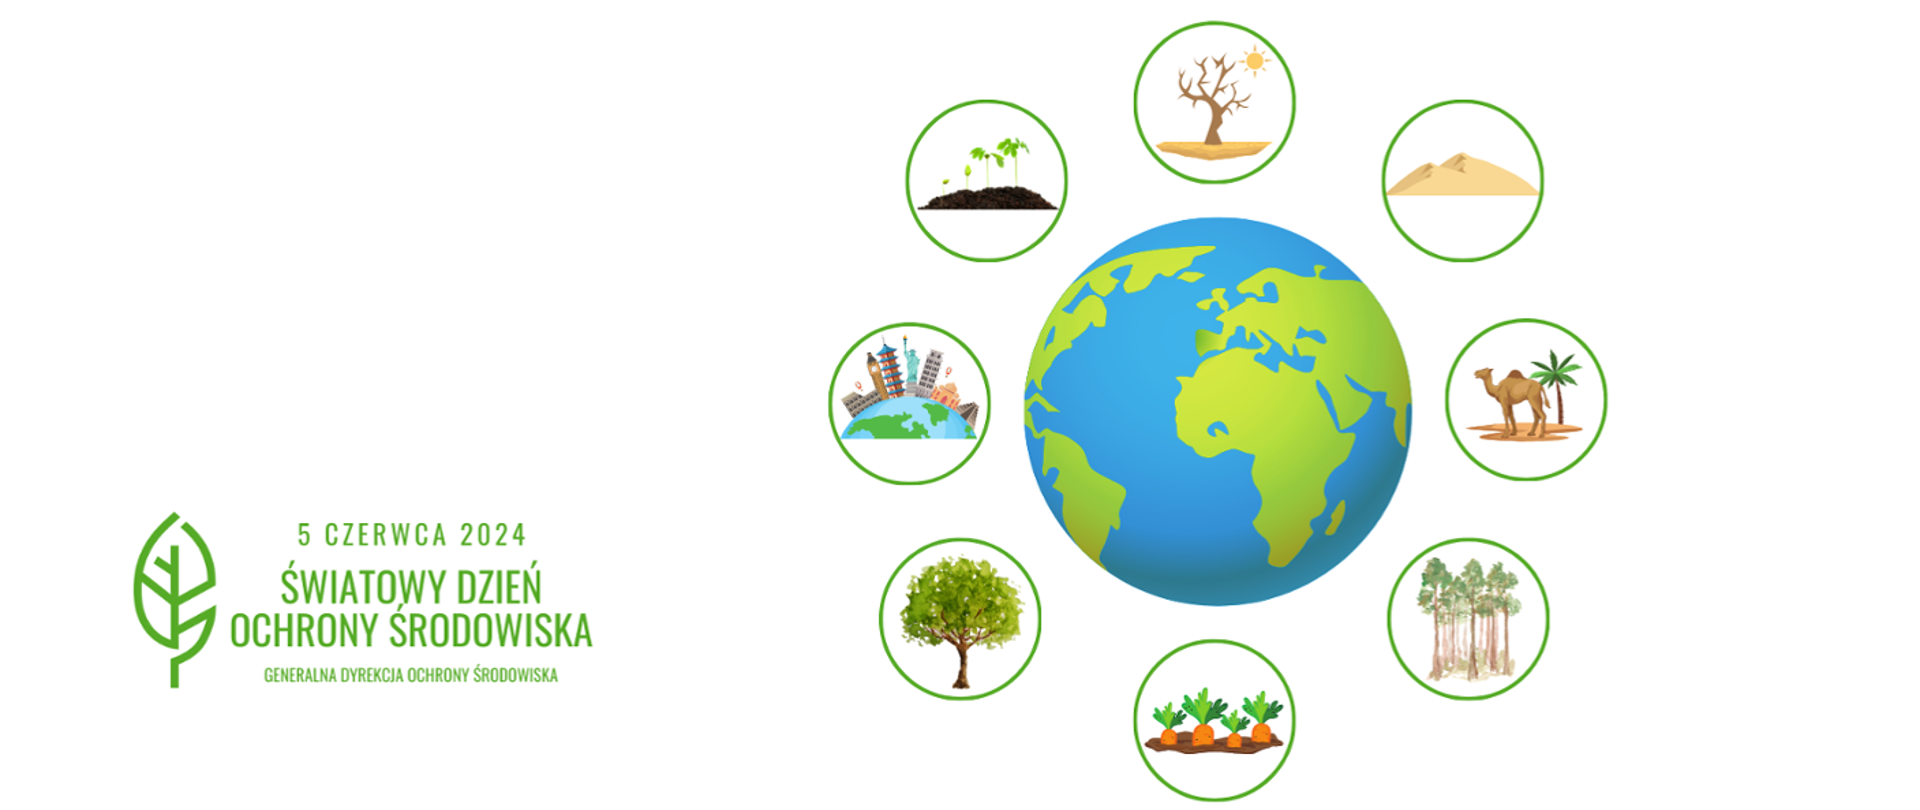 Dookoła rysunku kuli ziemskiej rysunku uschniętego drzewa, pustyni, lasów, miast, drzew. warzyw. W lewym dolnym rogu napis: 5 czerwca 2024 Światowy Dzień Ochrony Środowiska i logotyp Generalnej Dyrekcji Ochrony Środowiska (zielony liść).